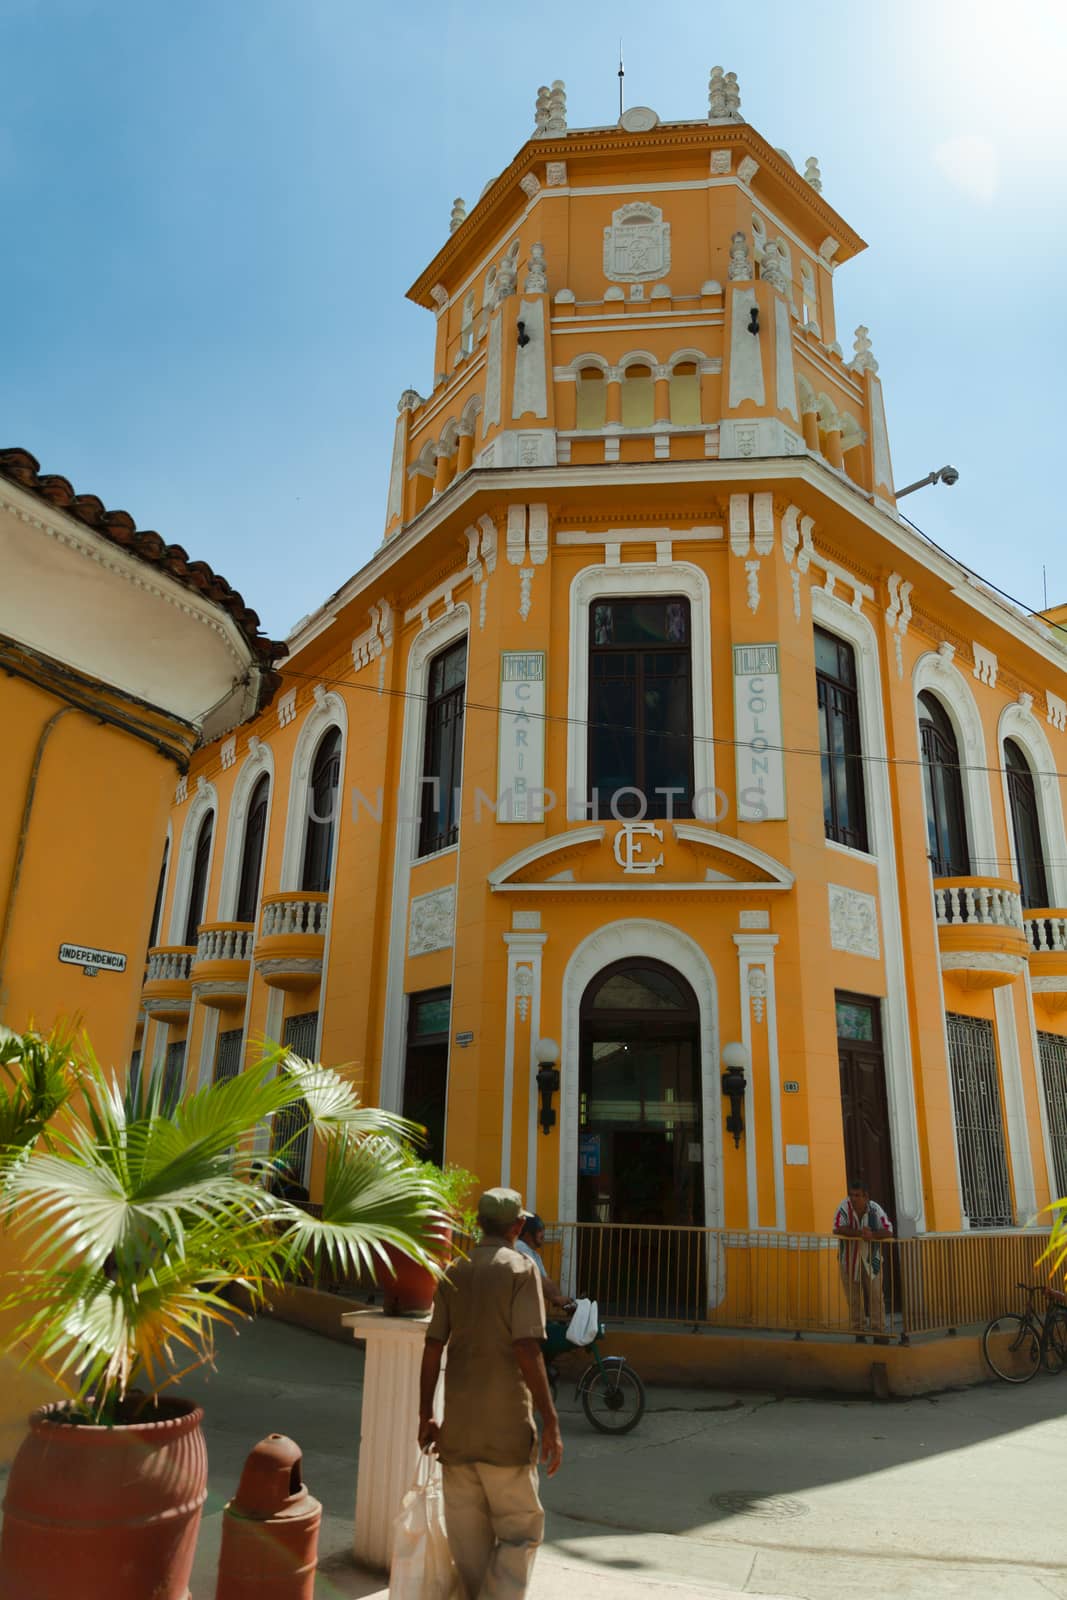 La Colonia, Sancti Spiritus, Cuba by vlad-m